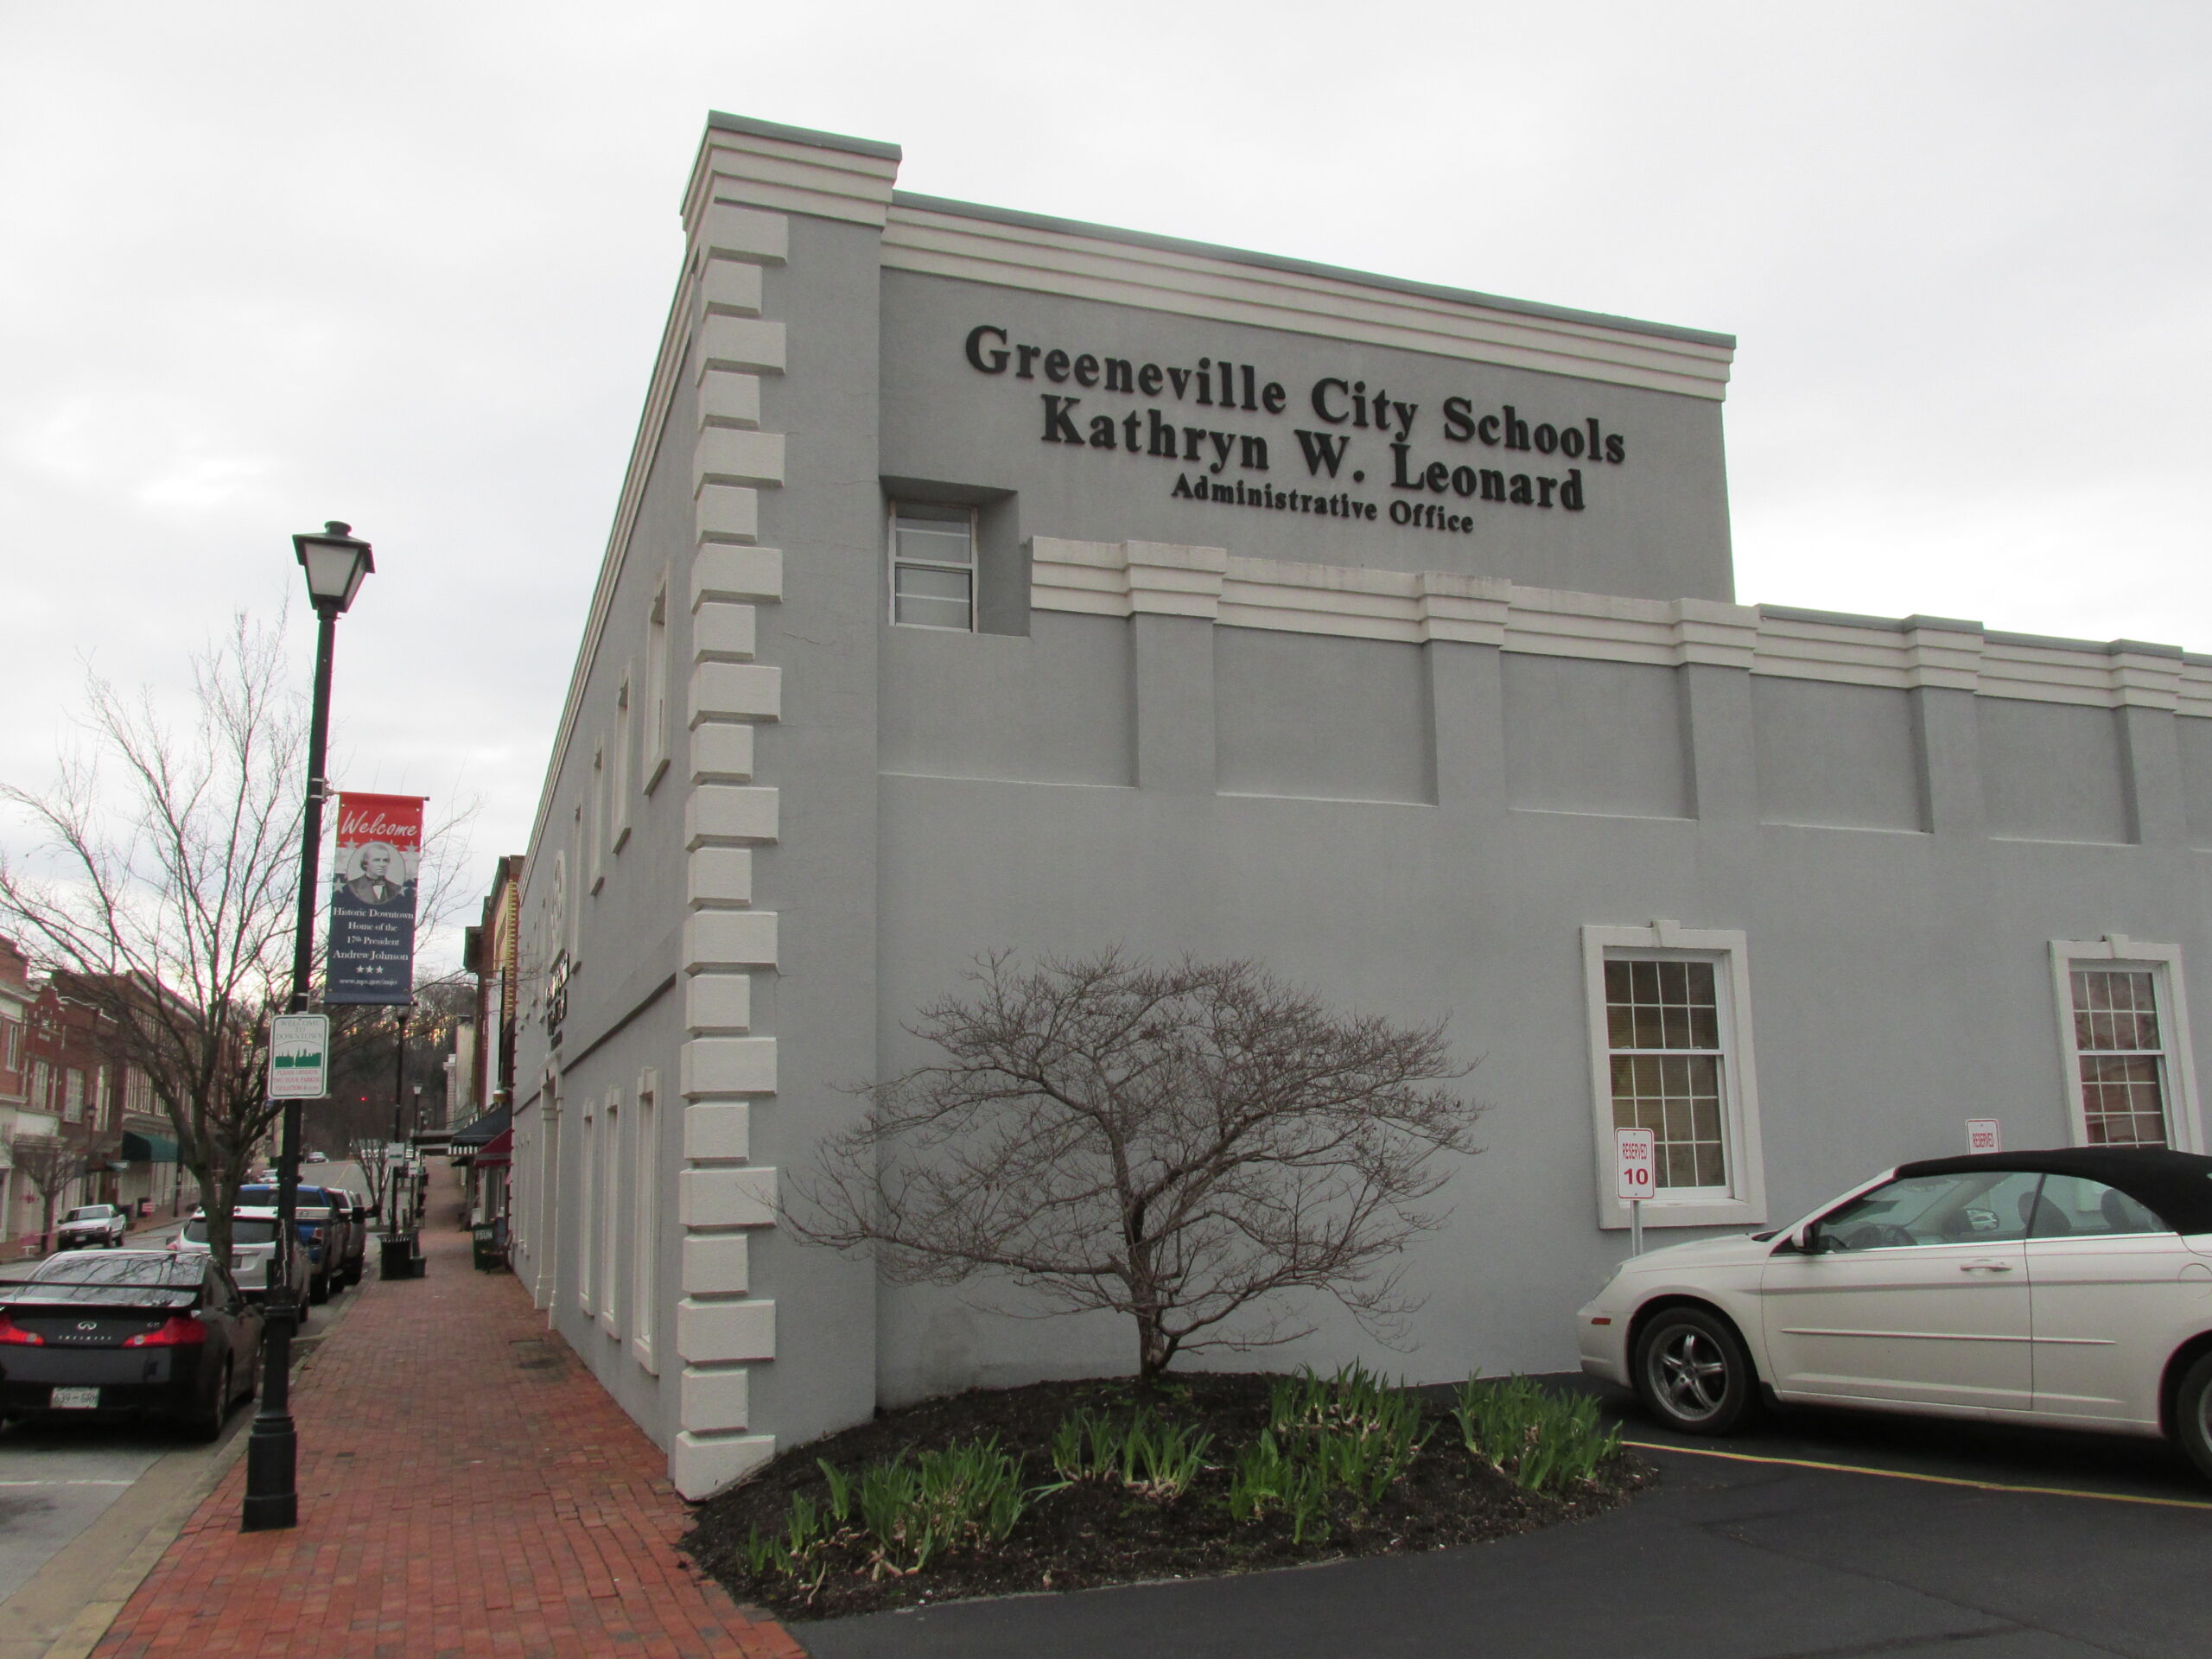 Greeneville City School Board Meeting